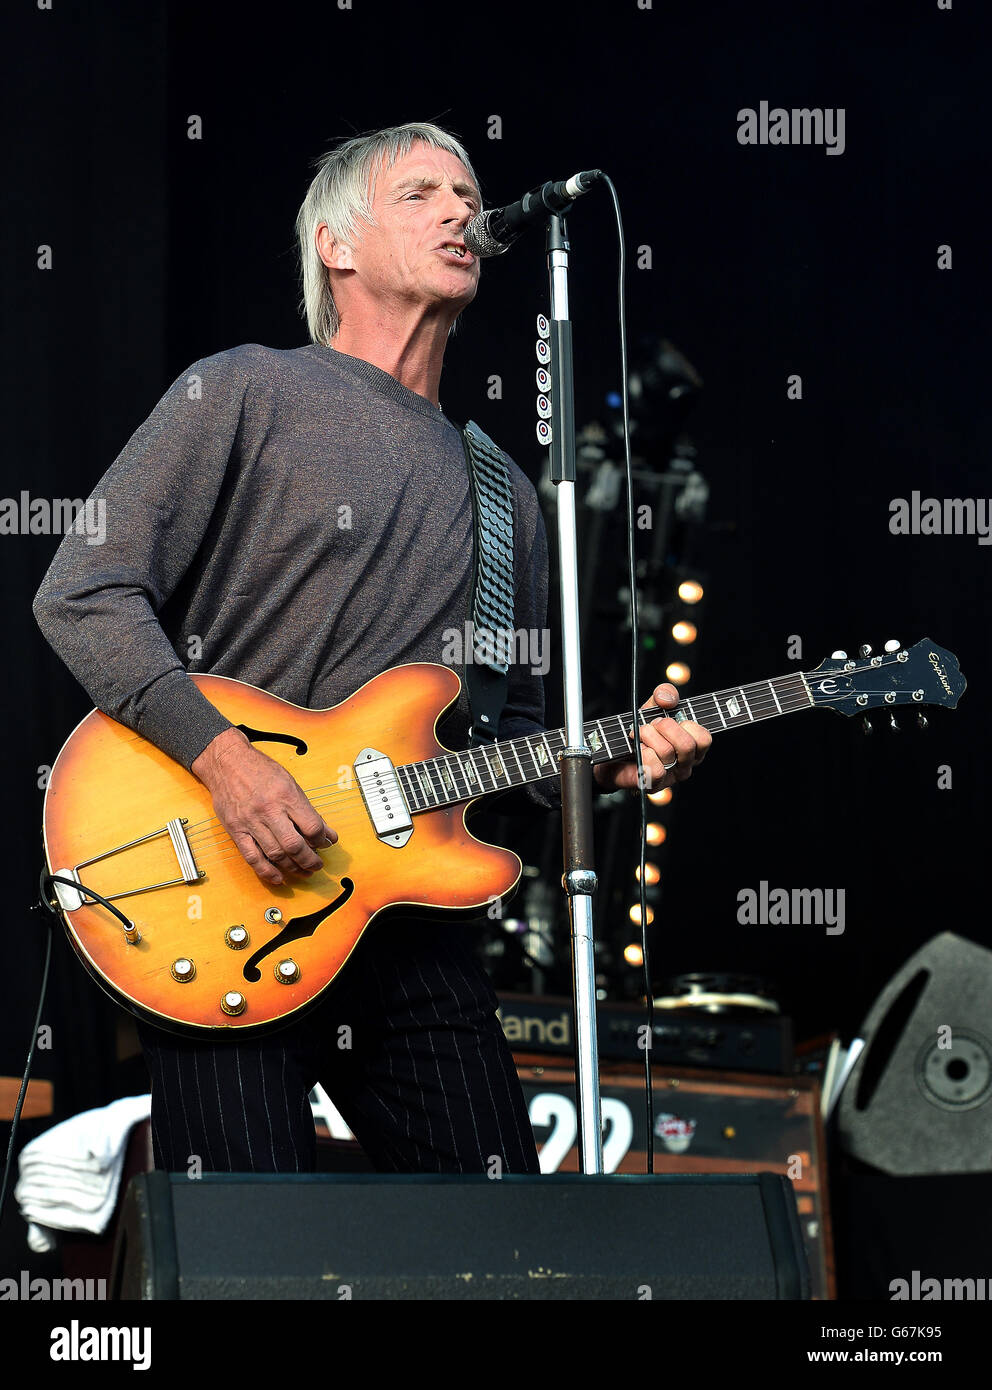 Paul Weller si esibisce sul palco all'Hard Rock Calling Music Festival presso il Queen Elizabeth Olympic Park di Stratford, a est di Londra. Foto Stock